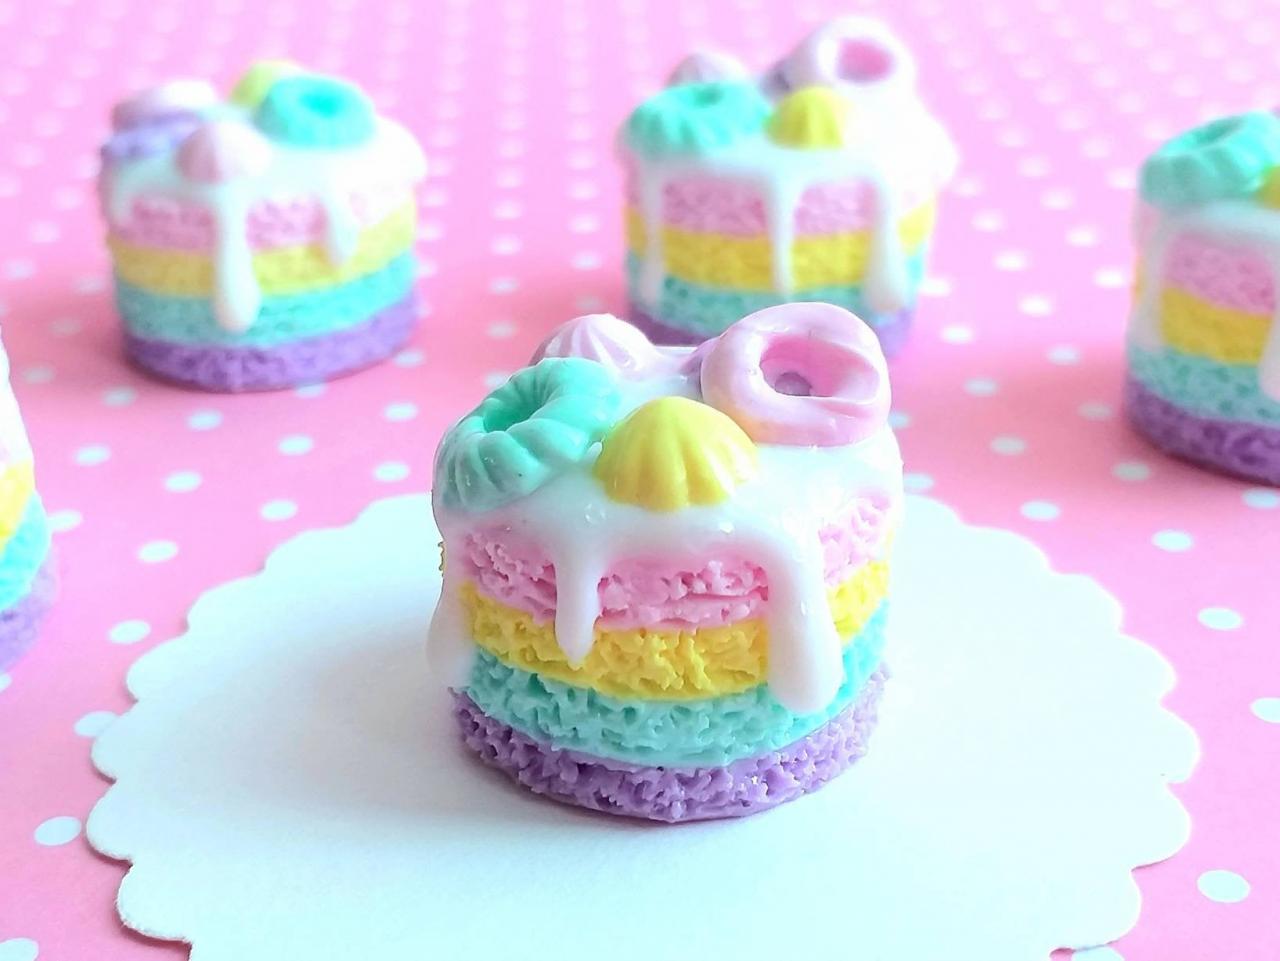 Dollhouse Miniature Rainbow Cake, Fake Food, Miniature Food, Dollhouse Food, Handmade, Miniature Bakery